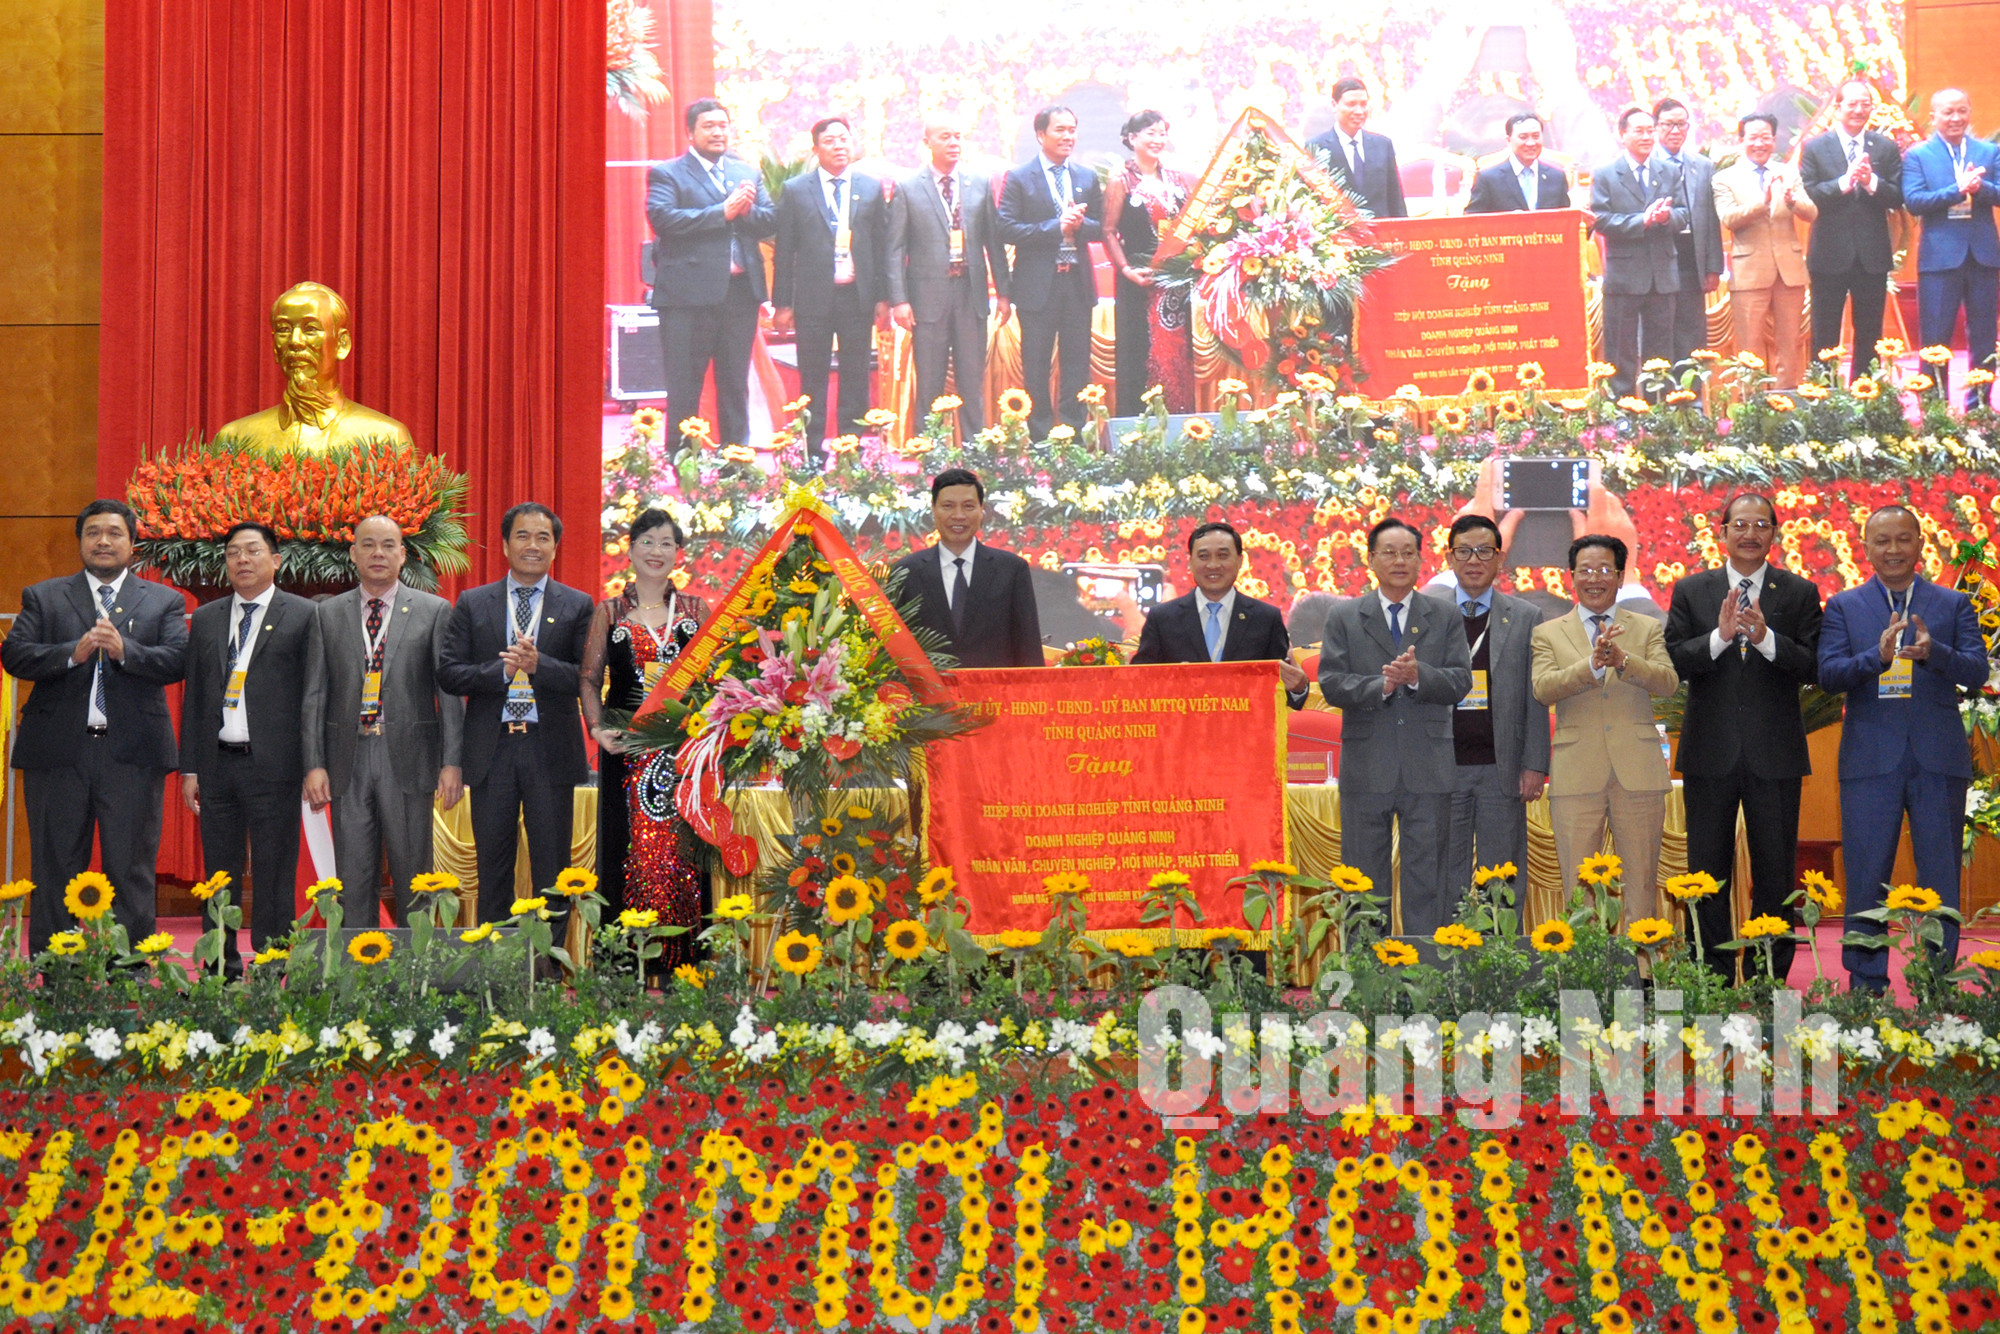 và bức trướng chúc mừng Hiệp hội doanh nghiệp tỉnh Quảng Ninh.